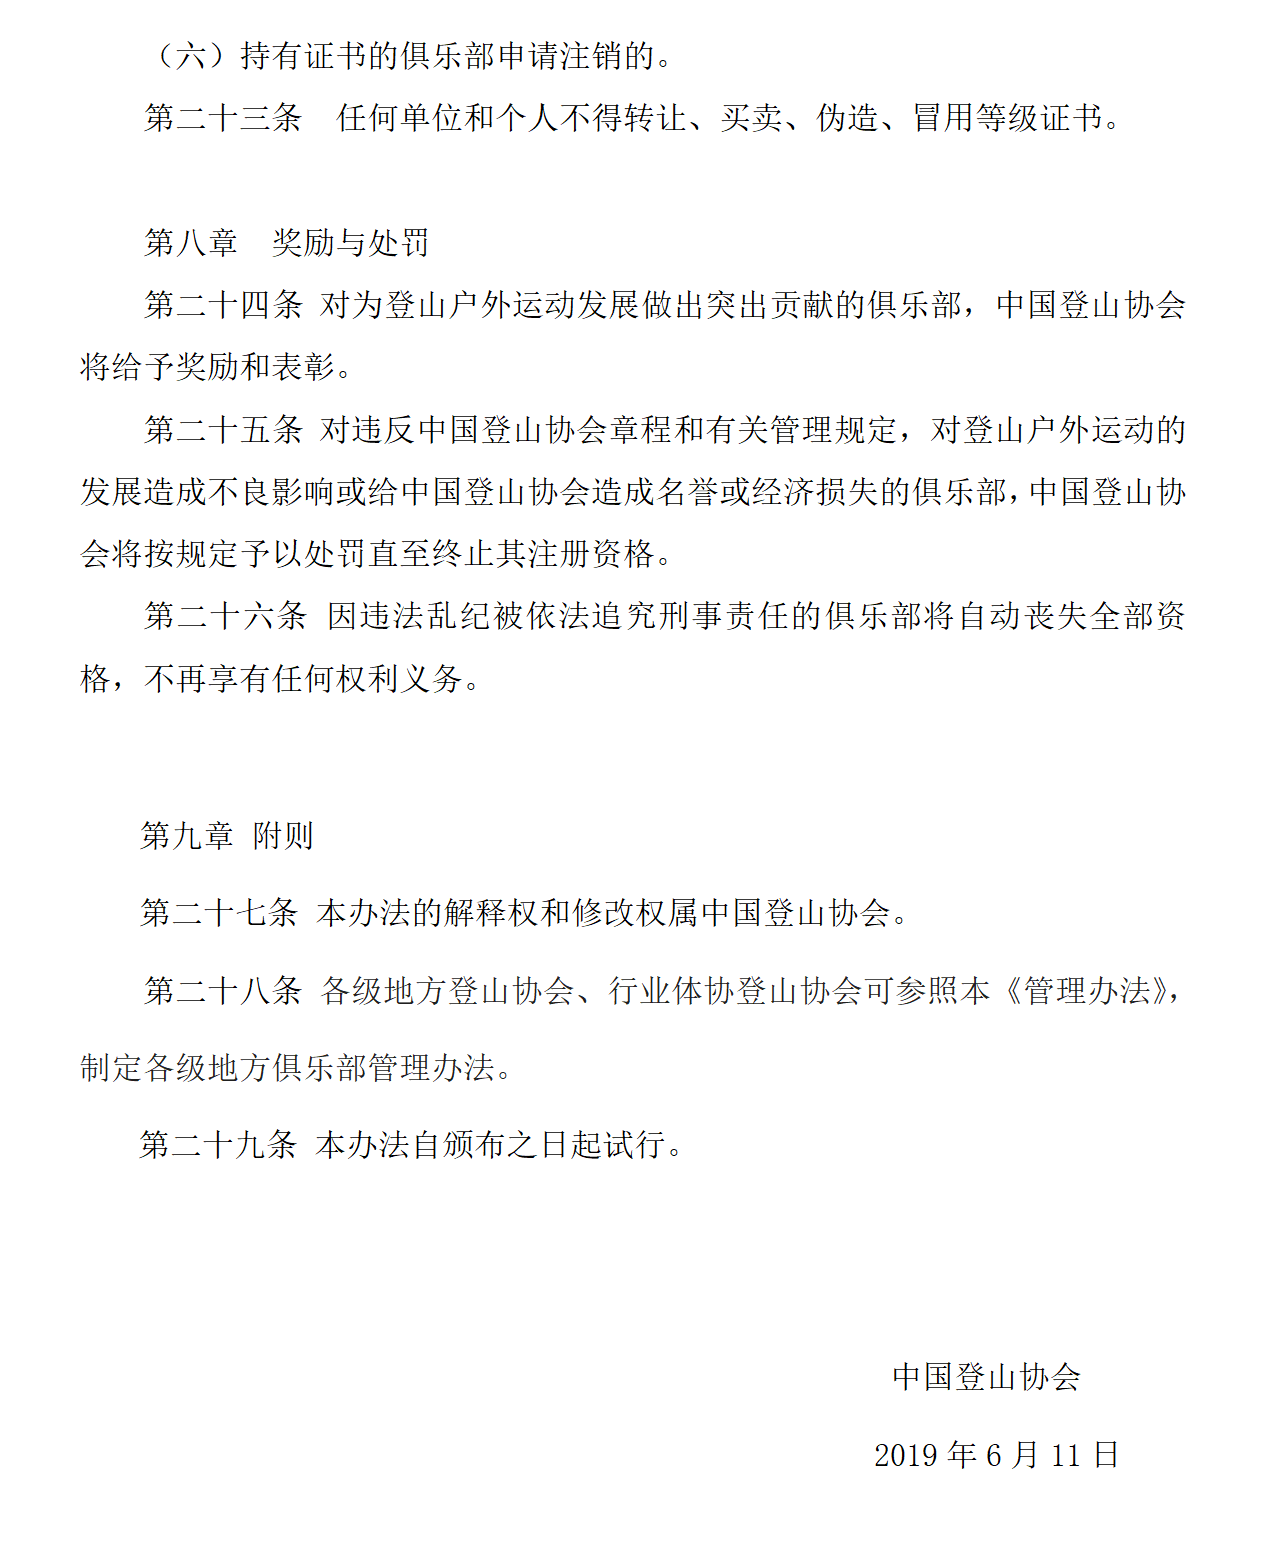 中国登山协会登山户外运动俱乐部管理办法_11.png